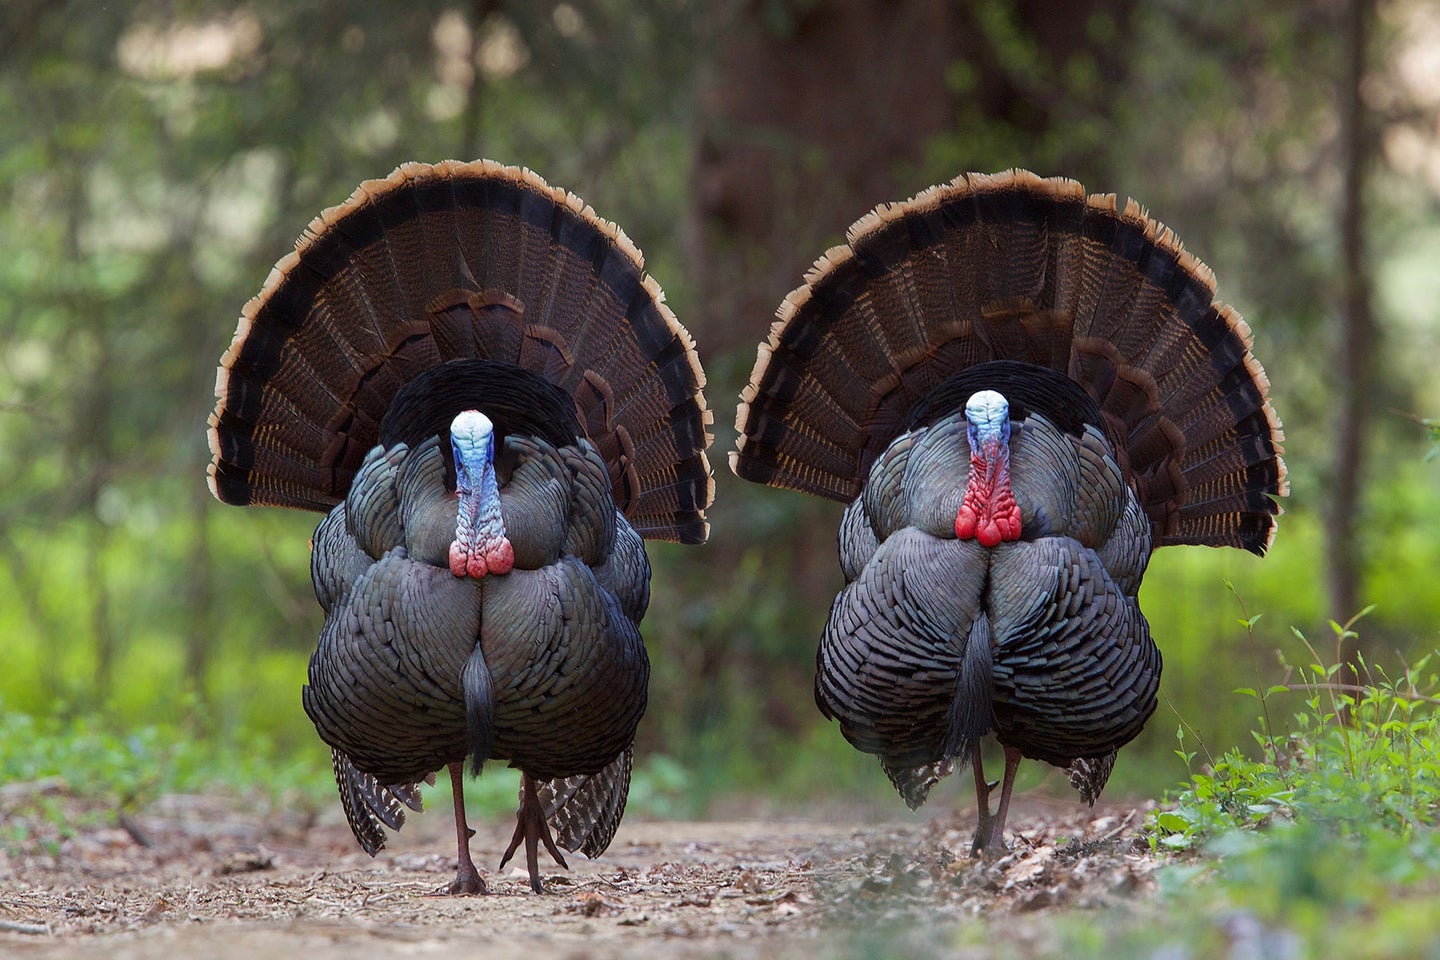 Two male turkeys in full strut in a field.